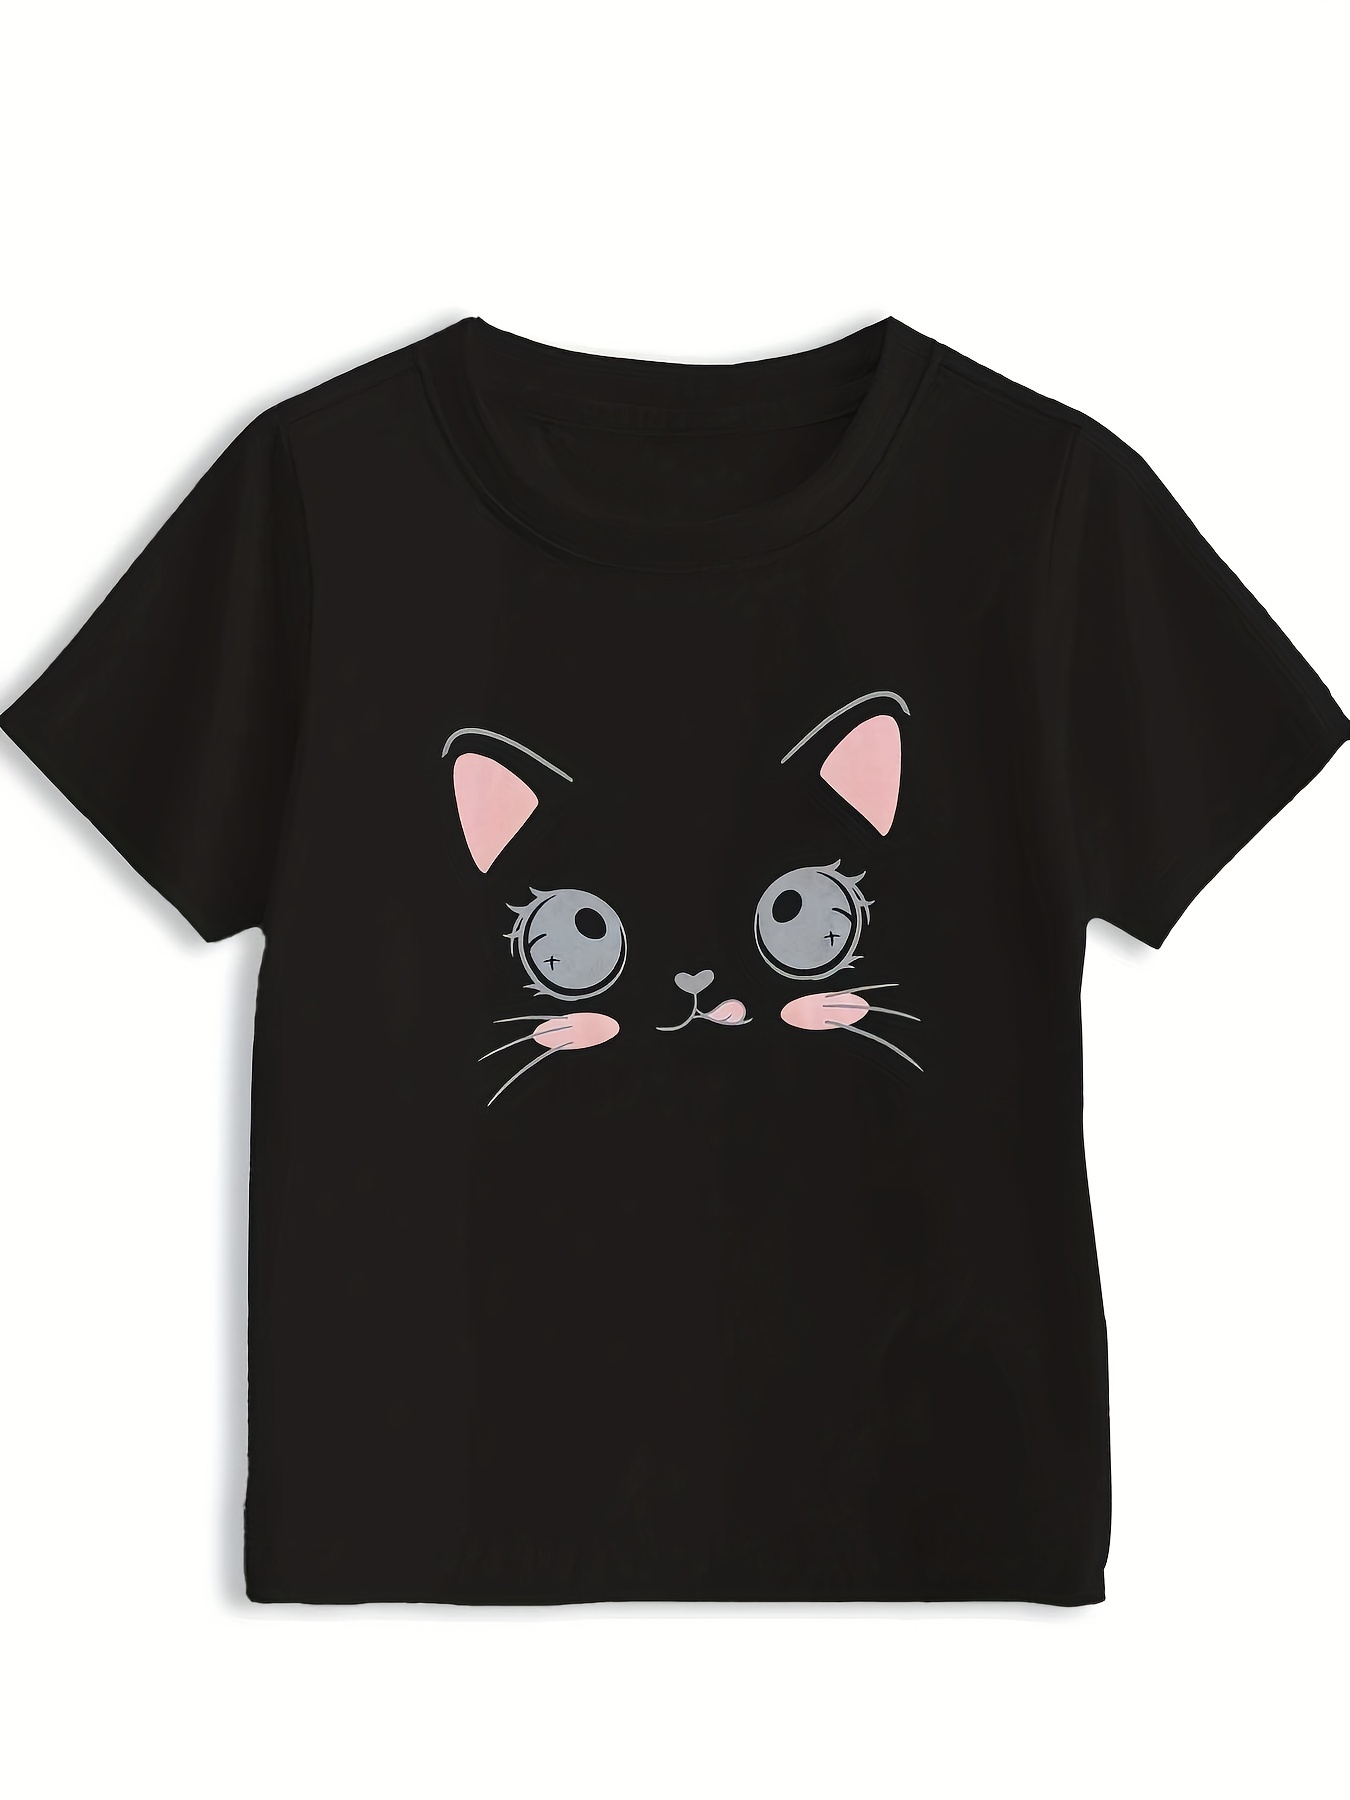 GACHA VIDA 3D Womens T Camisas Verão Menino / Meninas Moda Cute Casual T  Shirt De Manga Curta Kids Camisetas Camisetas Camisolas Roupa Dos Homens De  $175,61